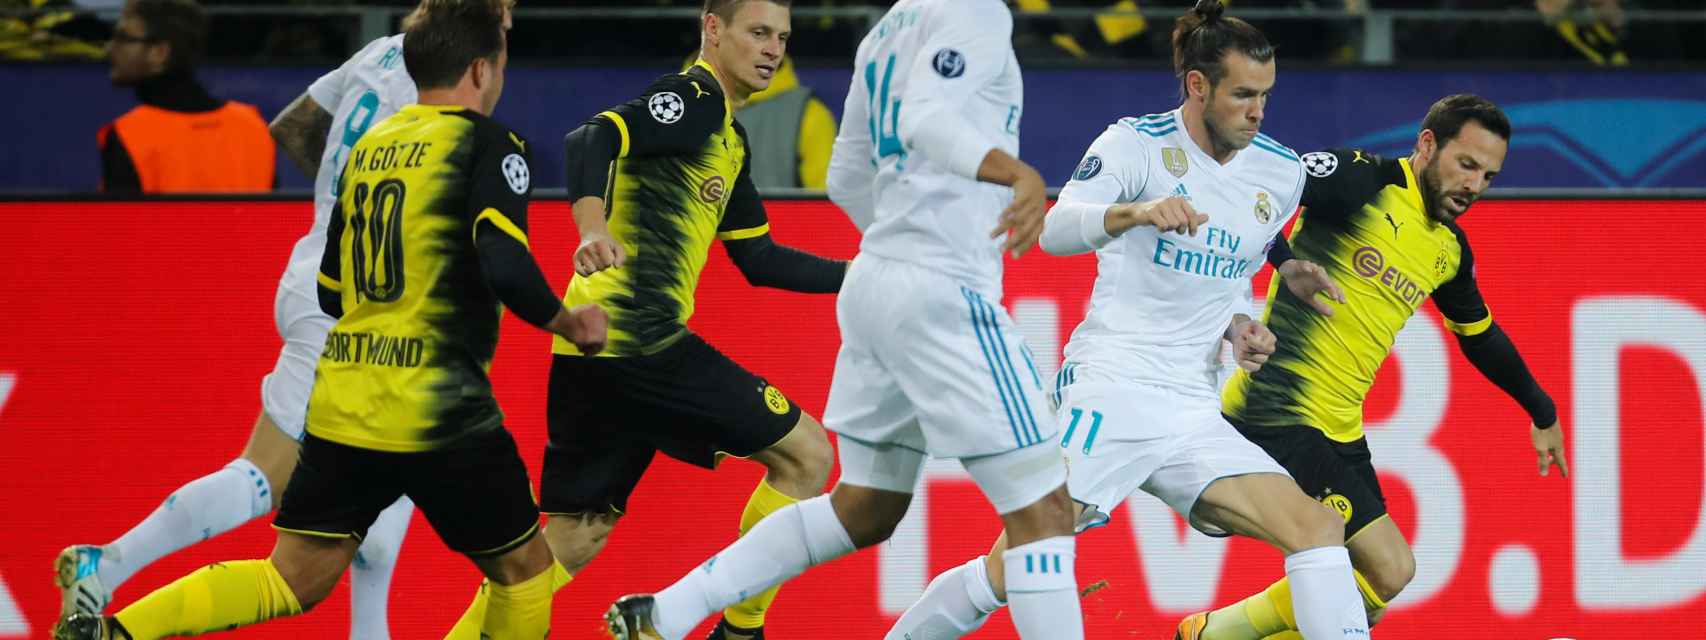 Imagen del partido entre Borussia Dortmund y Real Madrid.